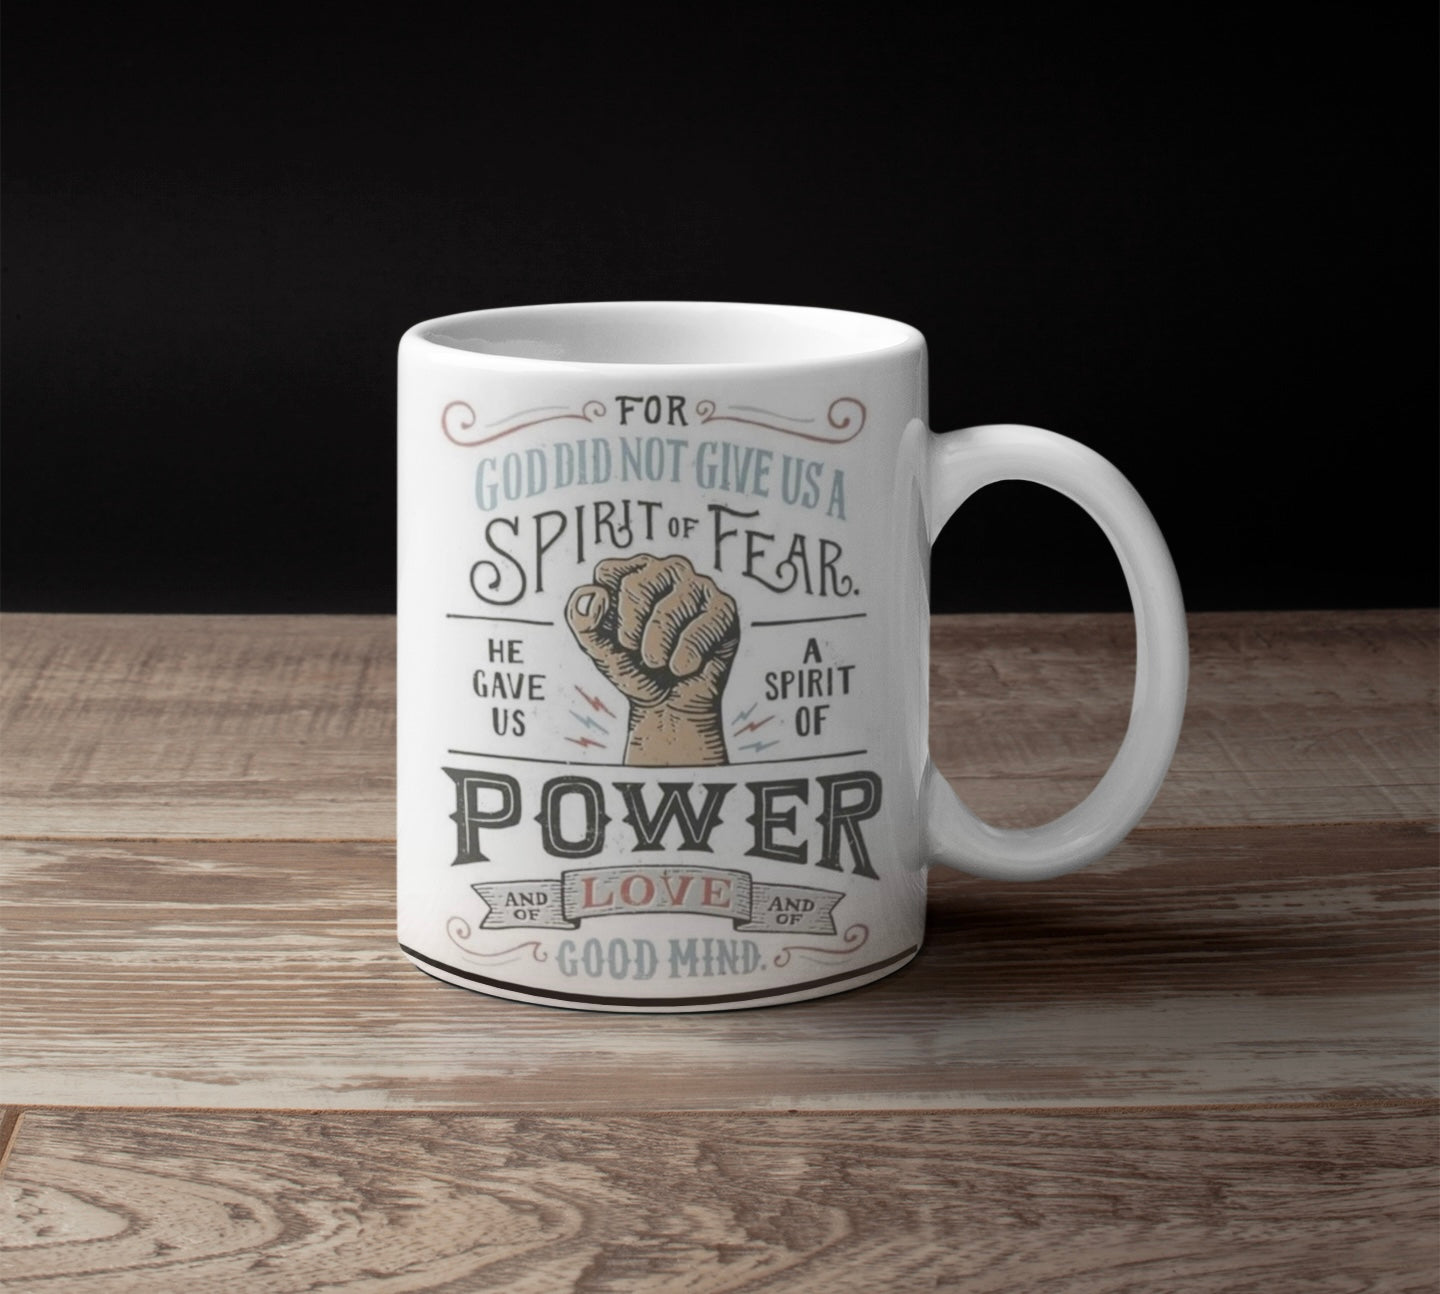 Power Mug